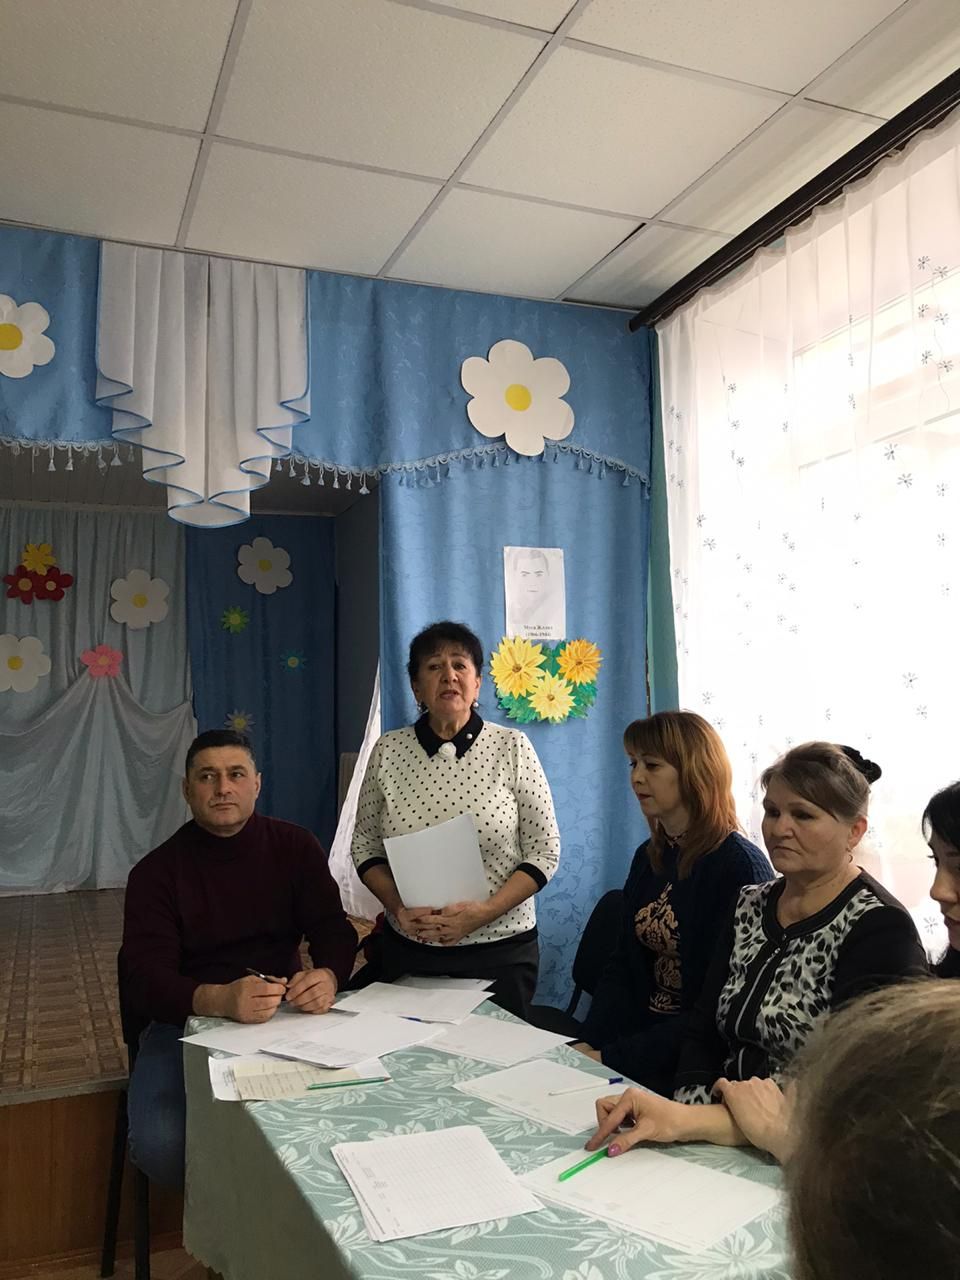 В Азнакаево прошел районный конкурс “Джалиловские чтения” (ФОТО+ВИДЕО)